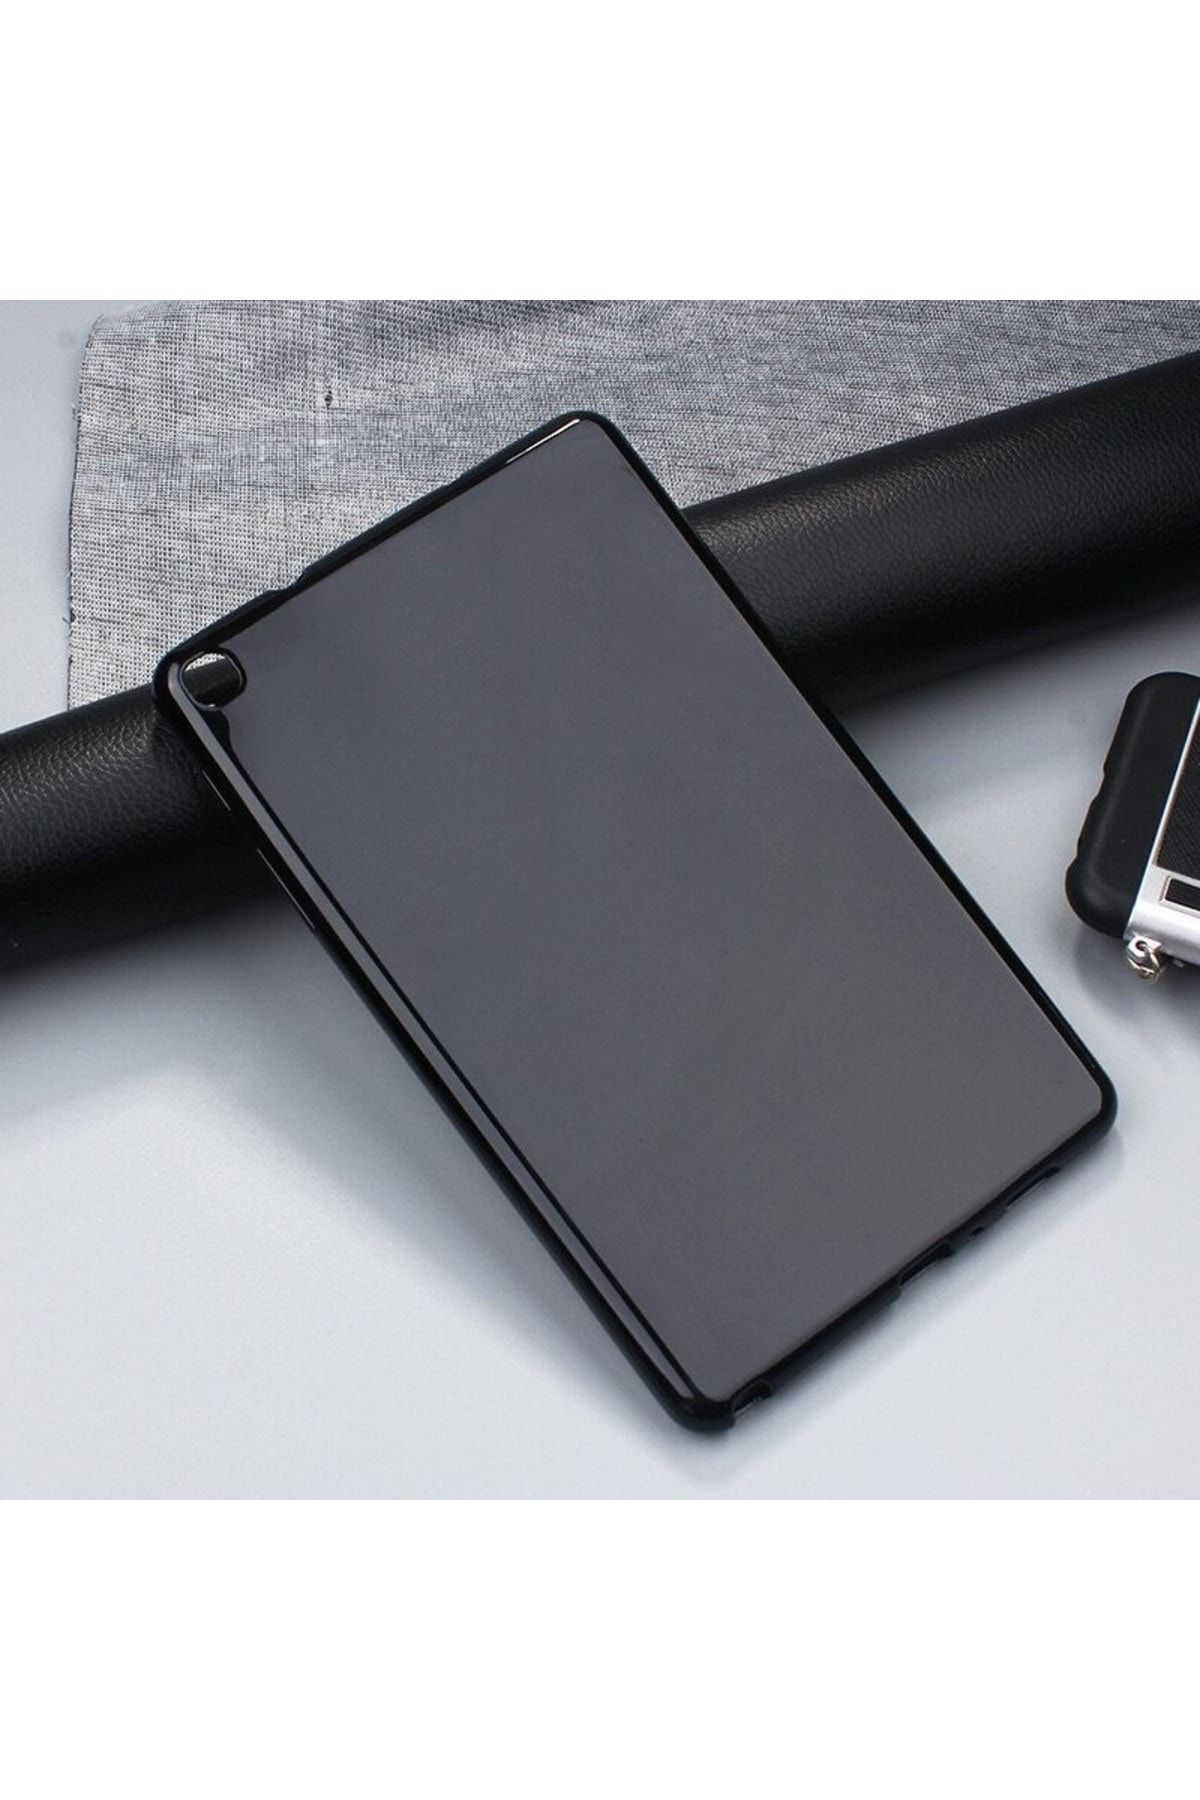 MOBAX Samsung Galaxy Tab T290 T295 T297 Kılıf Tablet Hibrit Silikon Case Siyah